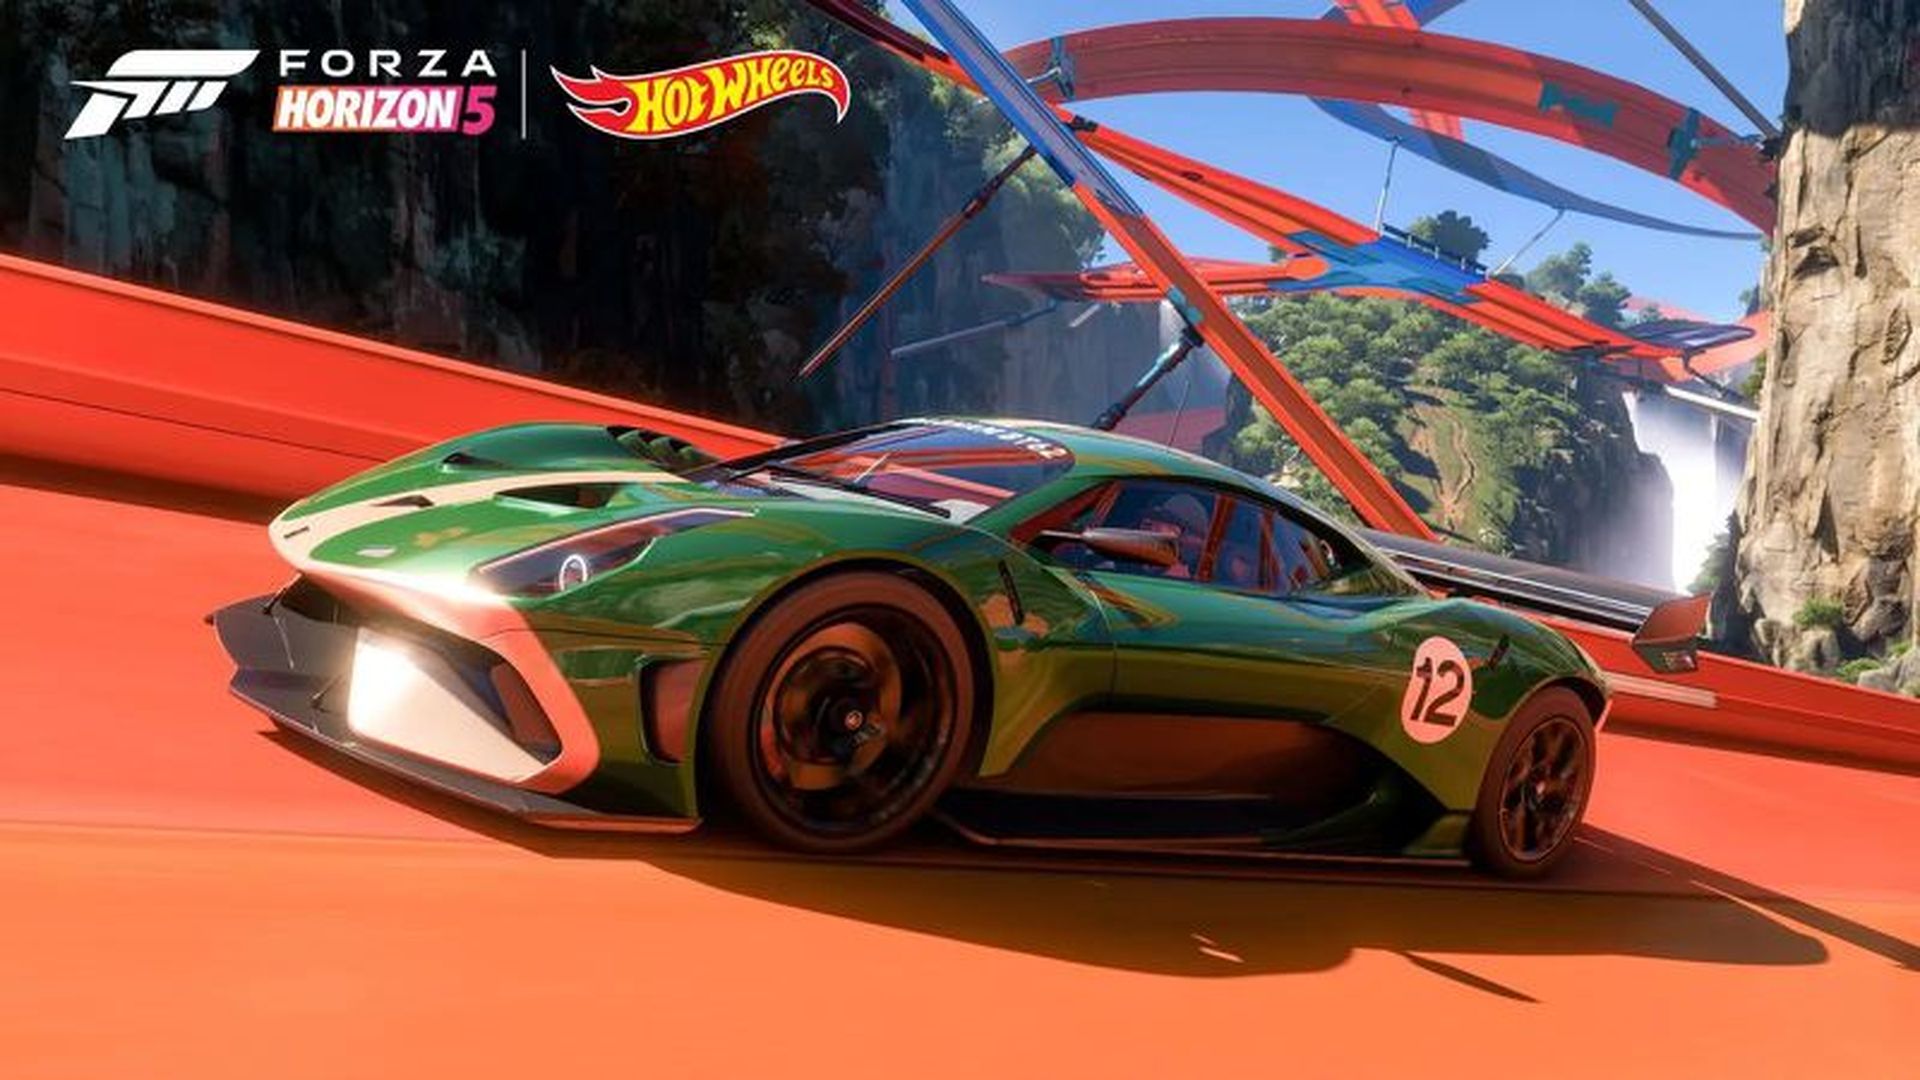 Уважаемые дамы и господа! Вышло дополнение Forza Horizon 5 Hot Wheels, в котором есть новый гоночный центр и набор инструментов для построения игровой трассы, а также множество литых под давлением артефактов и пластиковая инфраструктура трасс.